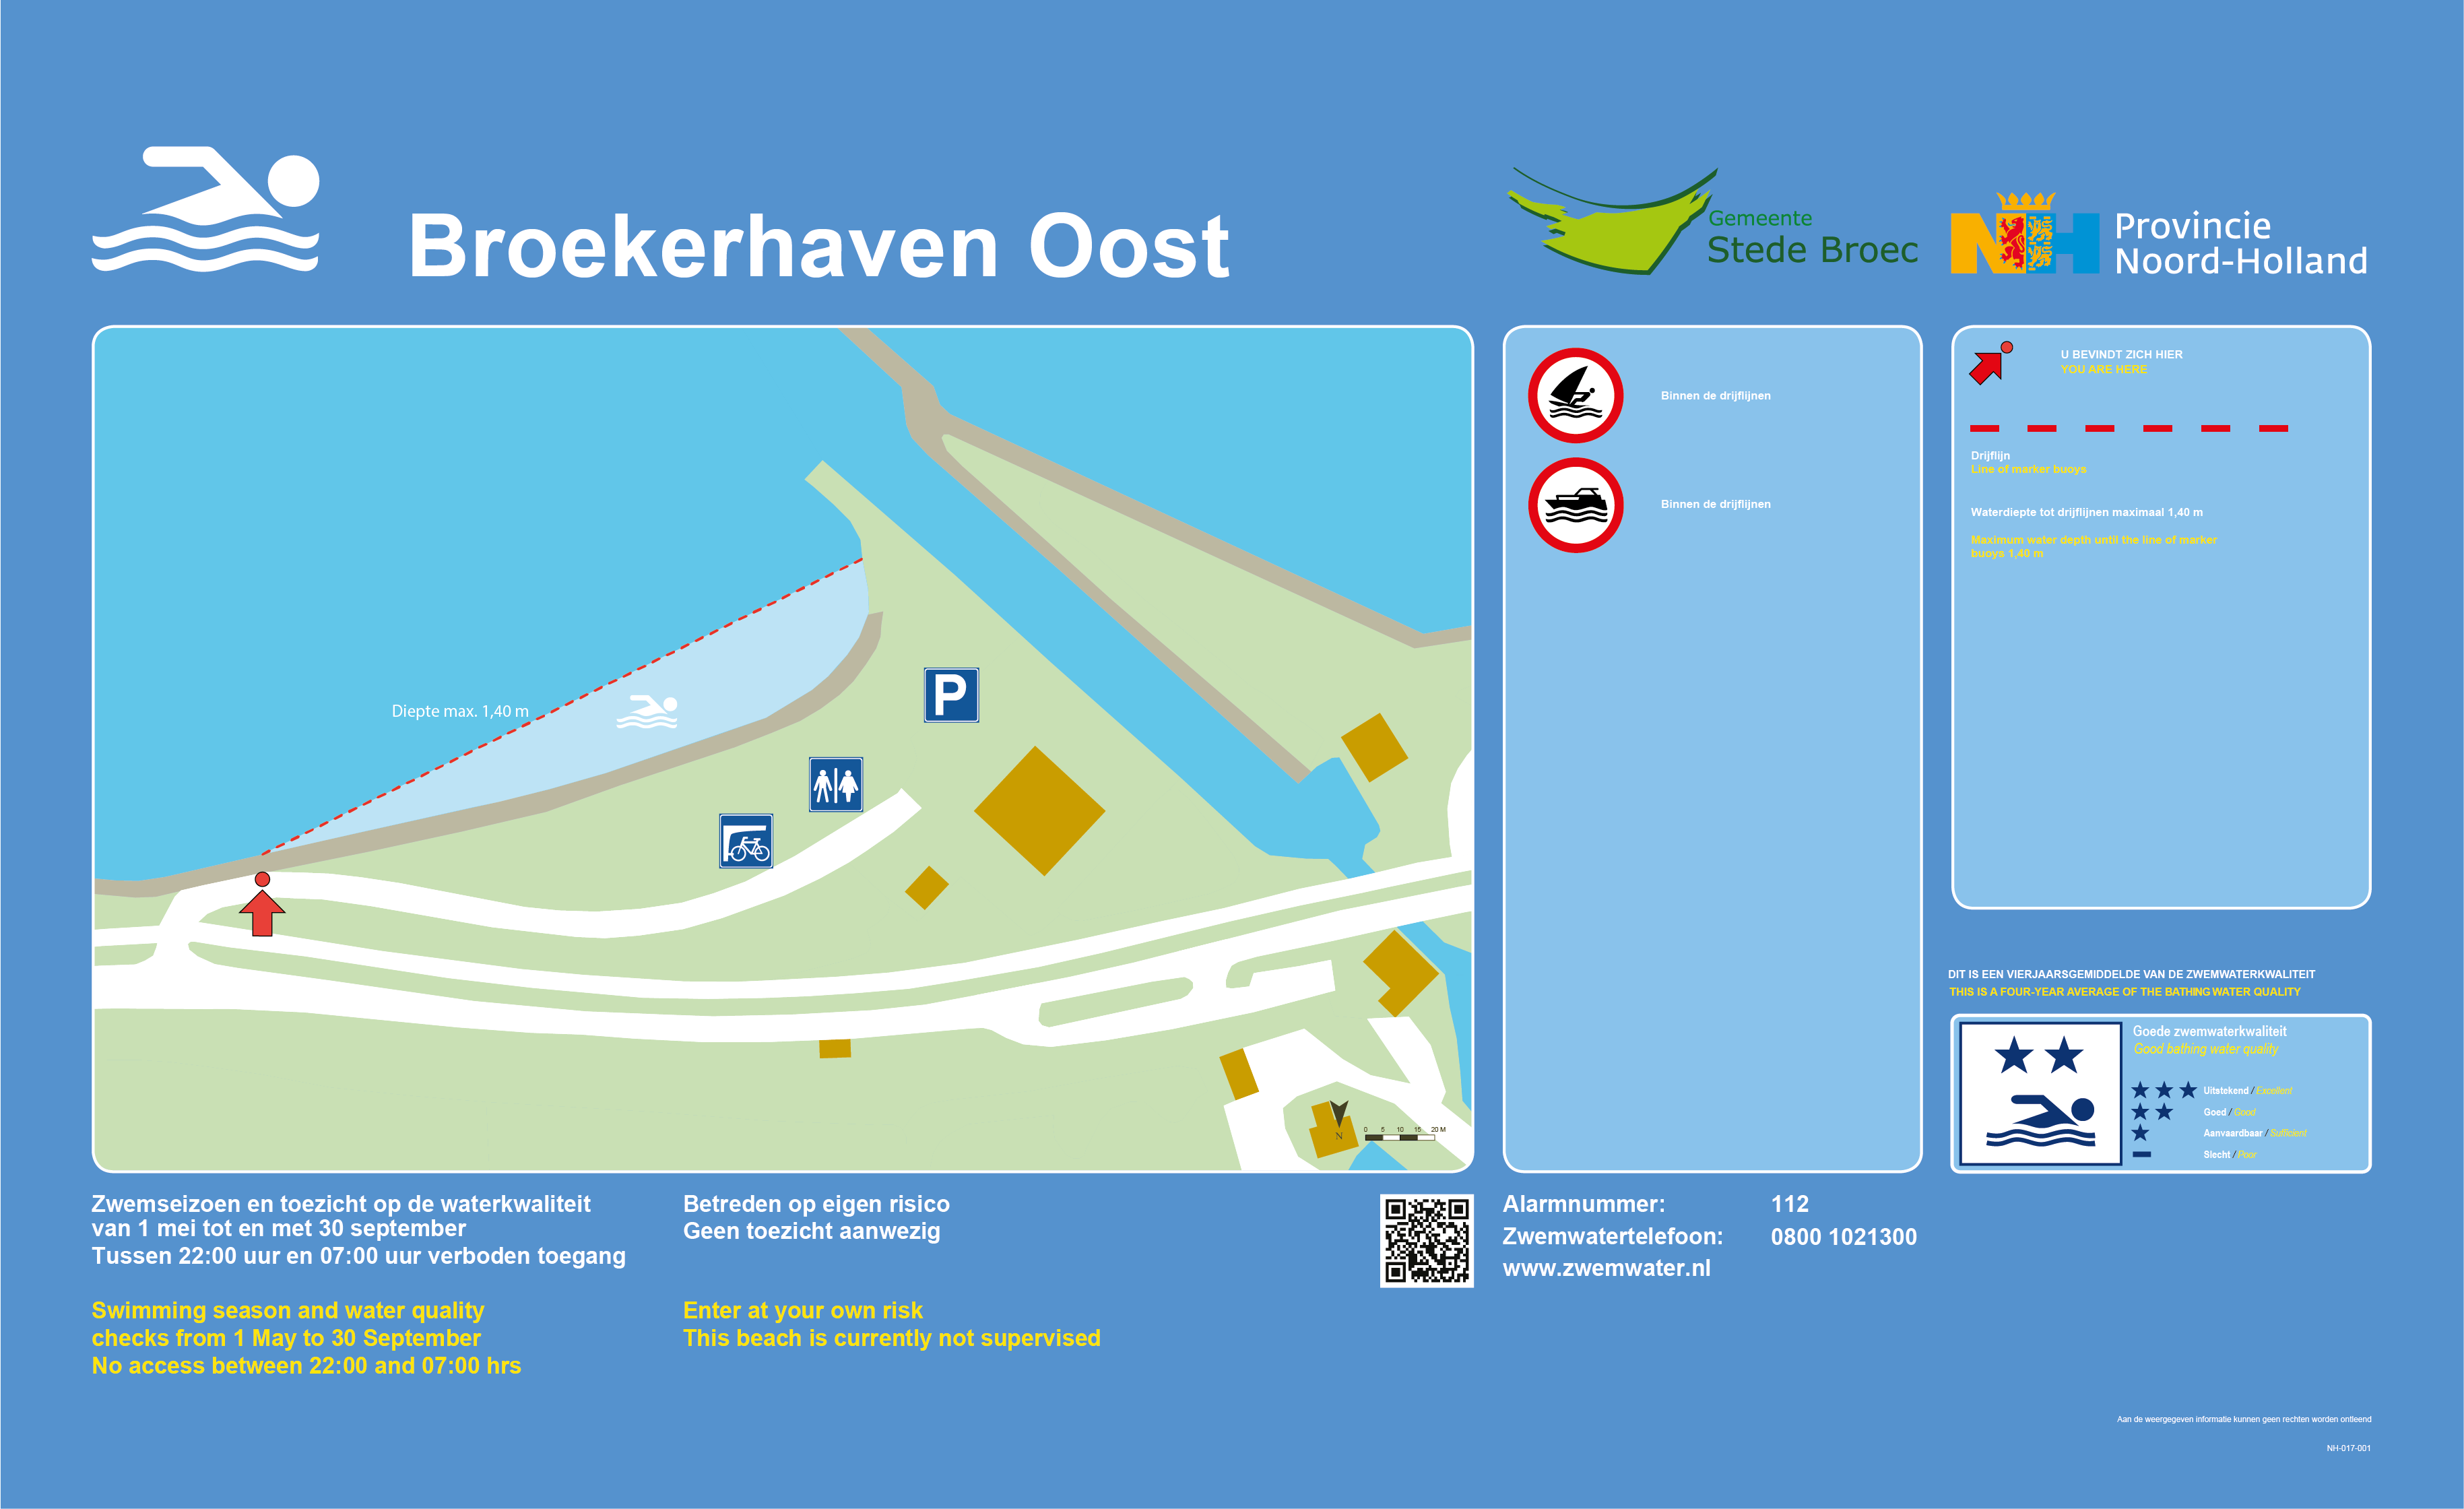 Het informatiebord bij zwemlocatie Broekerhaven Oost